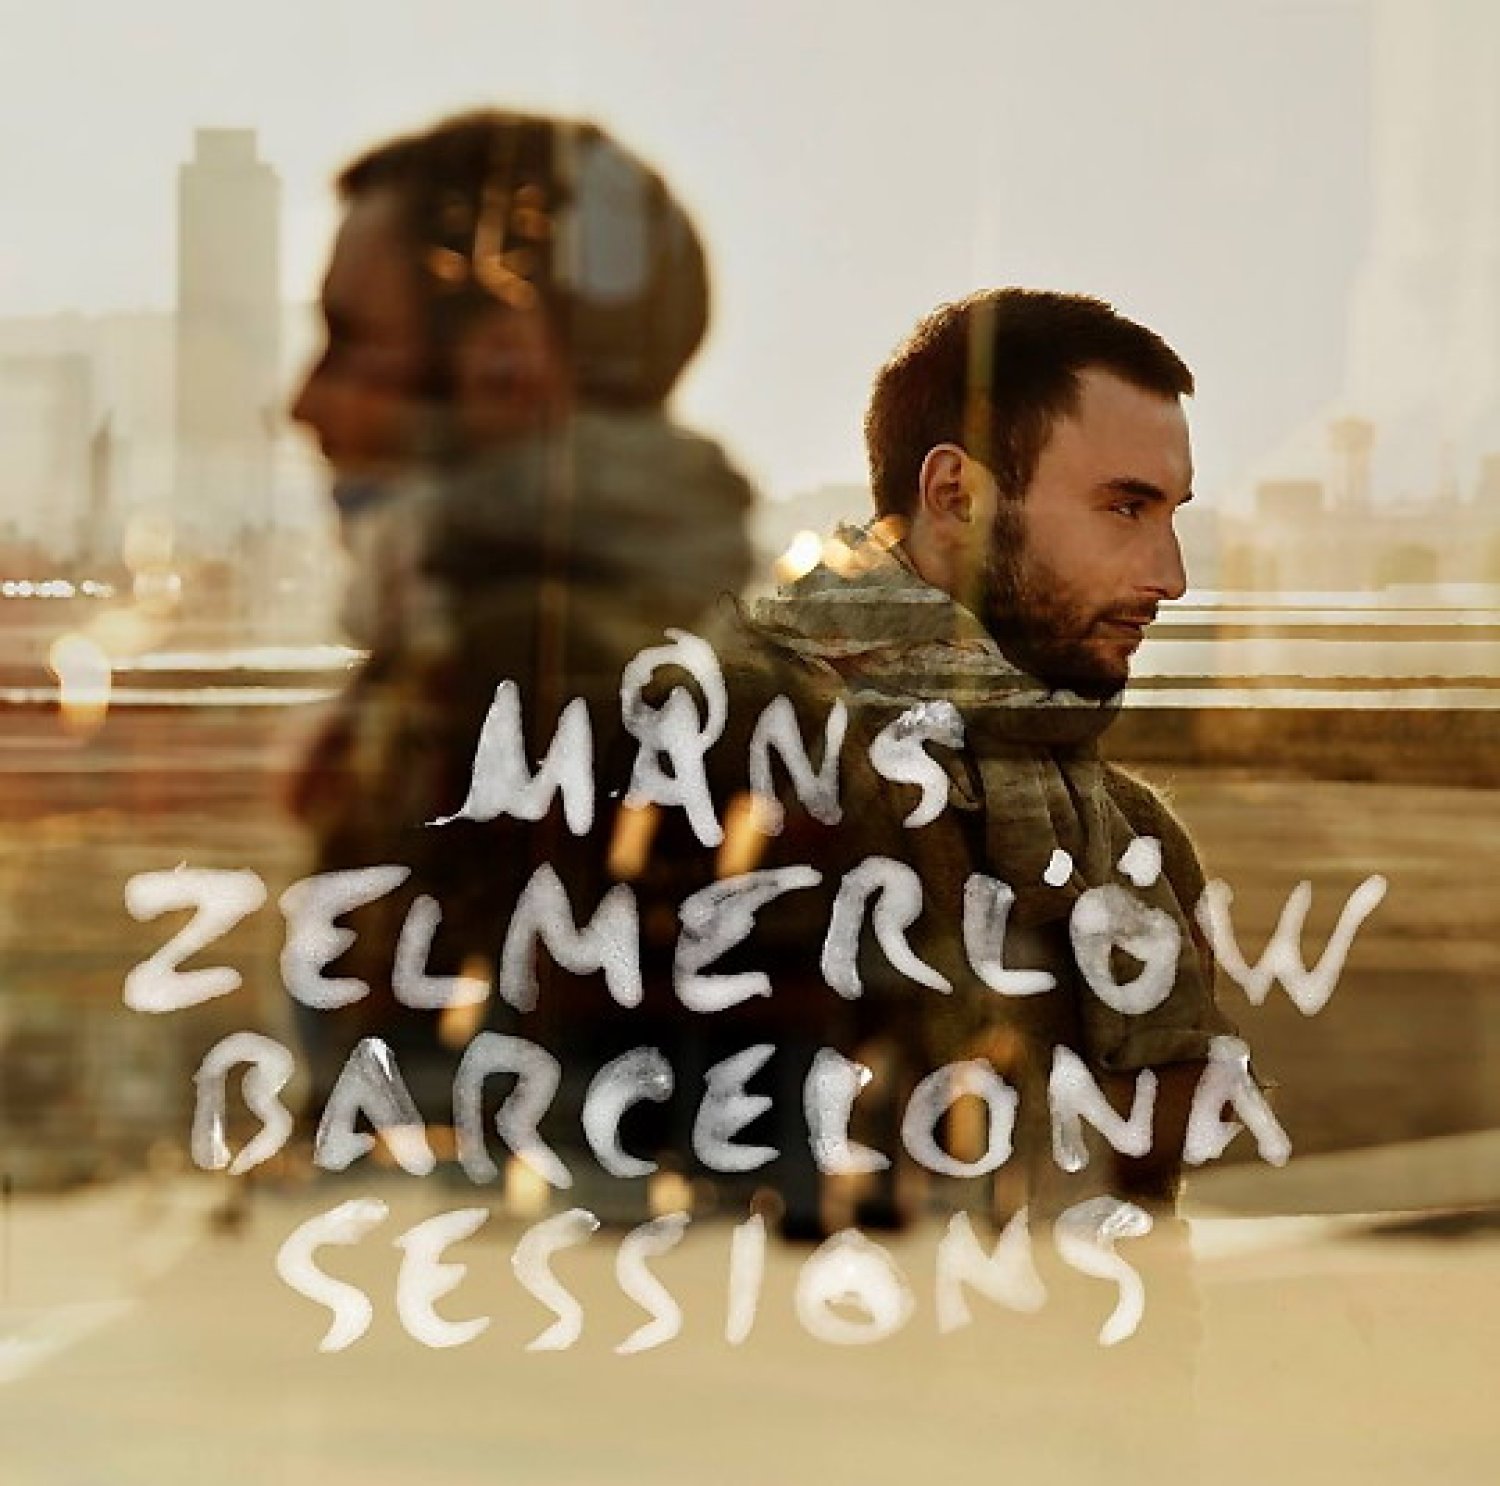 Barcelona sessions, le nouvel album de Måns Zelmerlöw